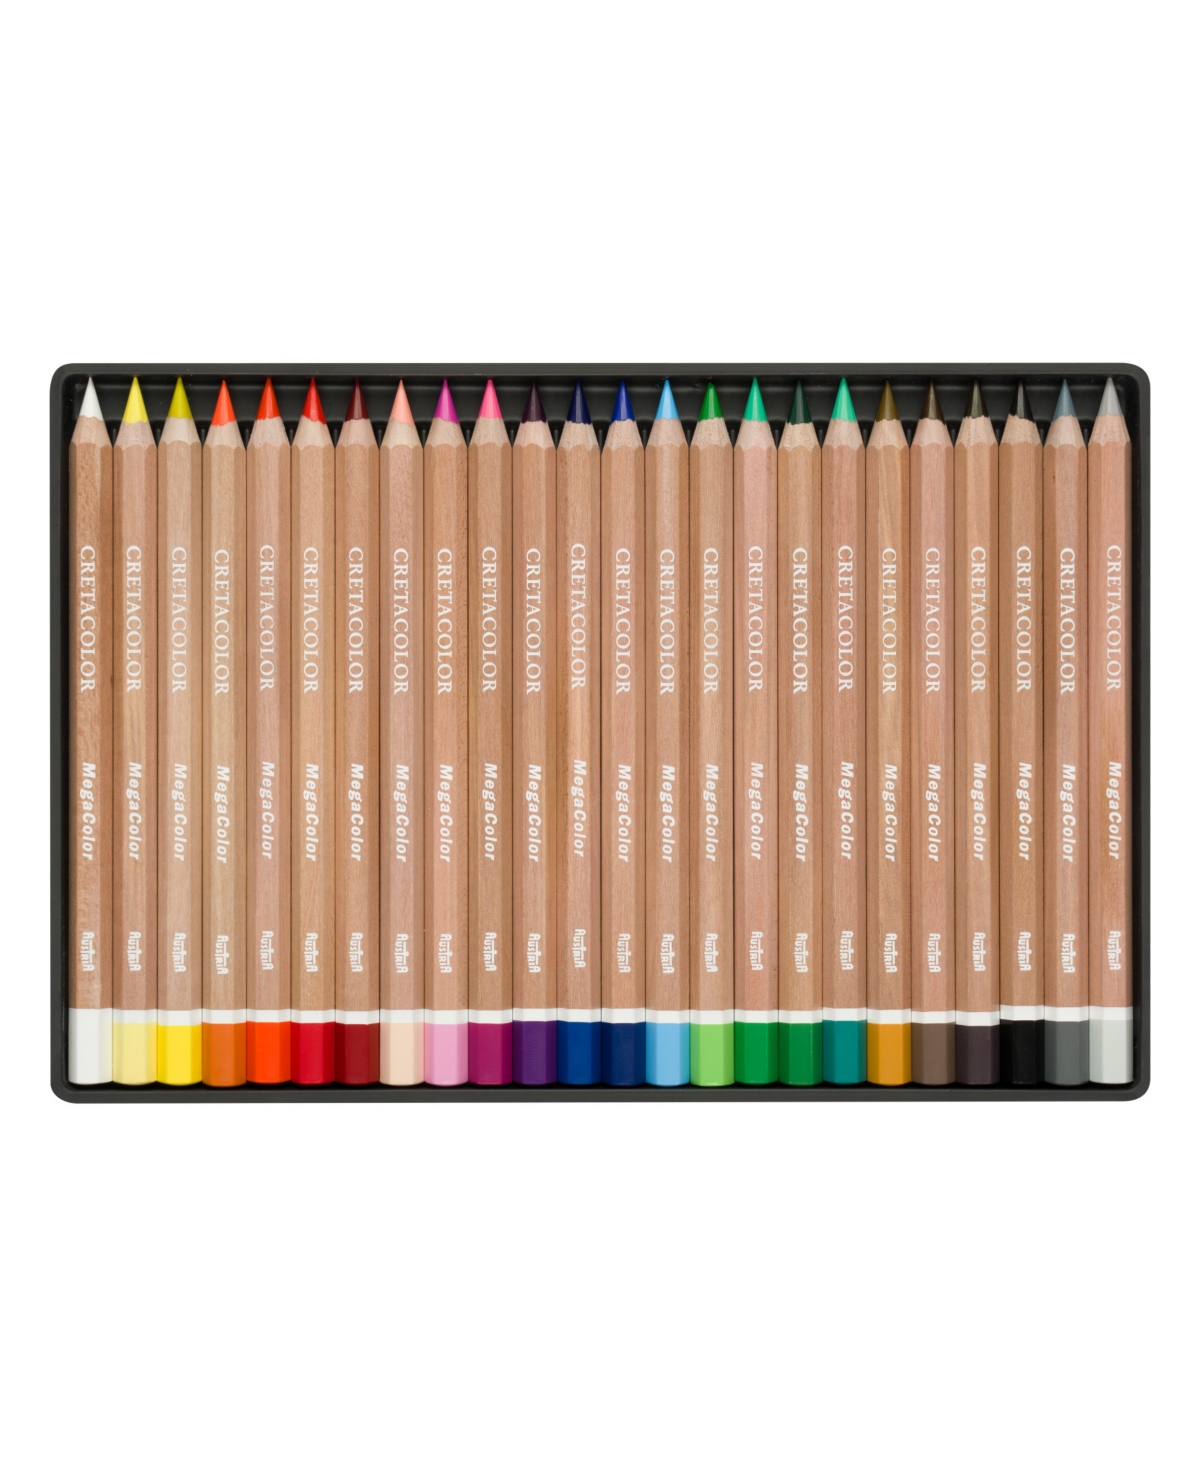 Megacolor Pencil Set, Megacolor Tin Set of 24 Assorted Colors